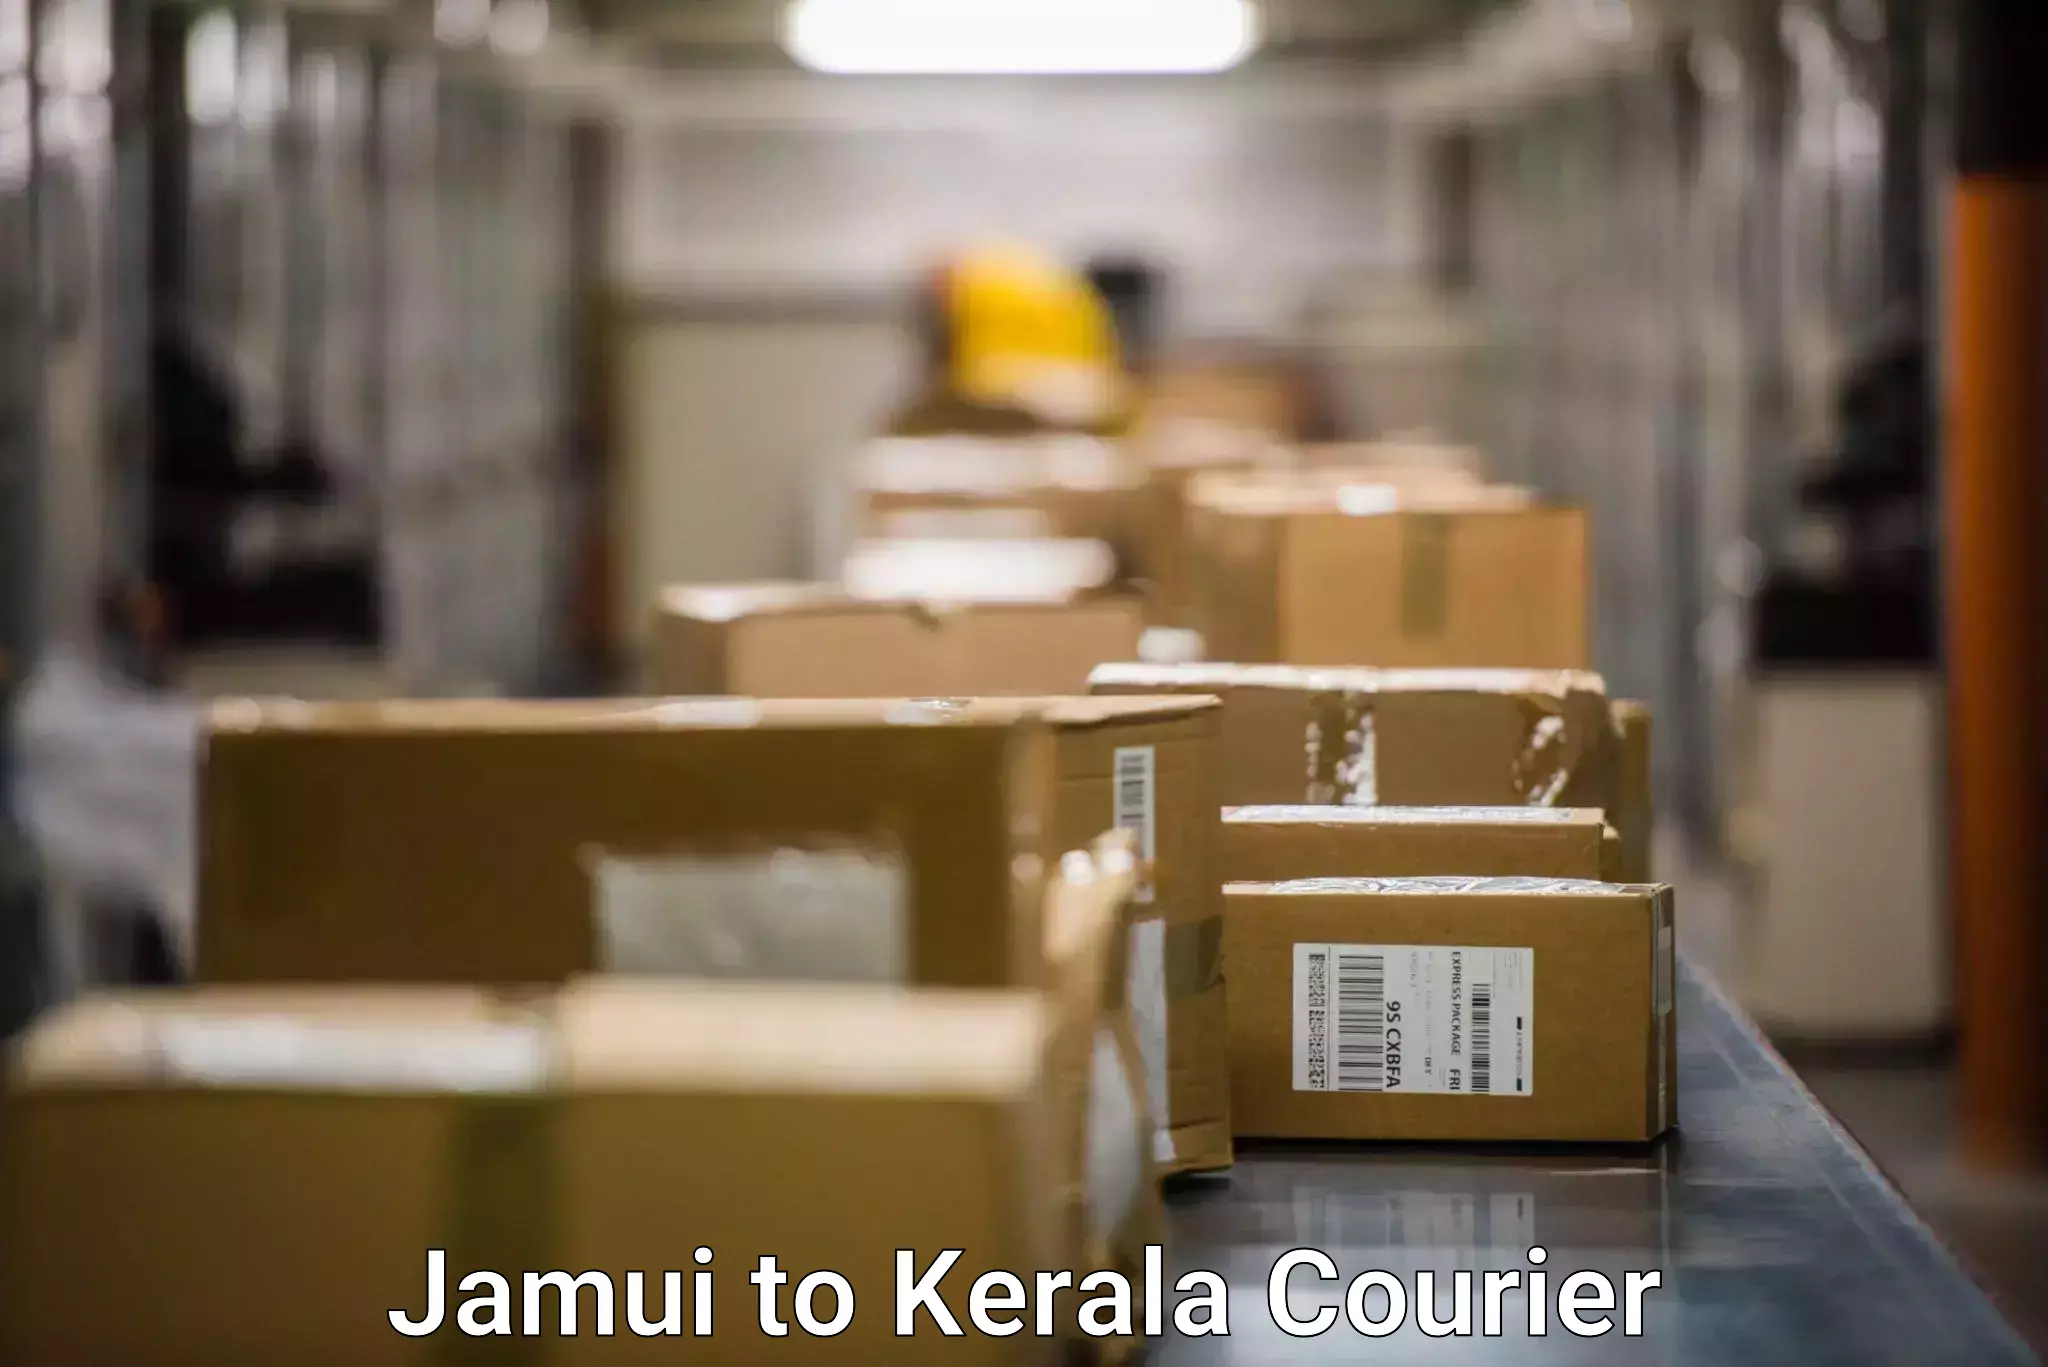 Courier insurance Jamui to Puthukkad